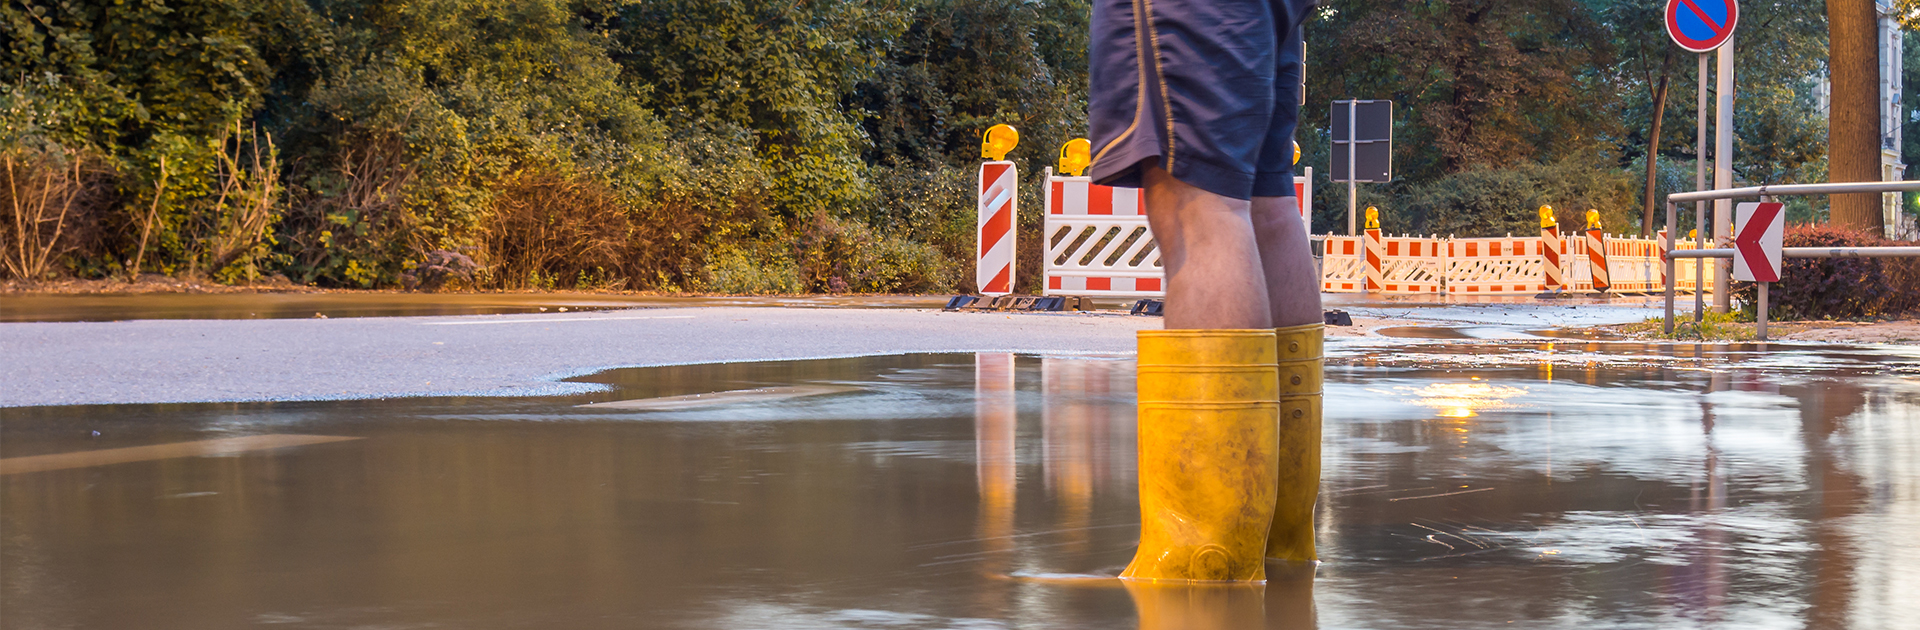 Eine Person mit kurzer Hose und gelben Gummistiefeln steht auf auf einer überfluteten Kreuzung